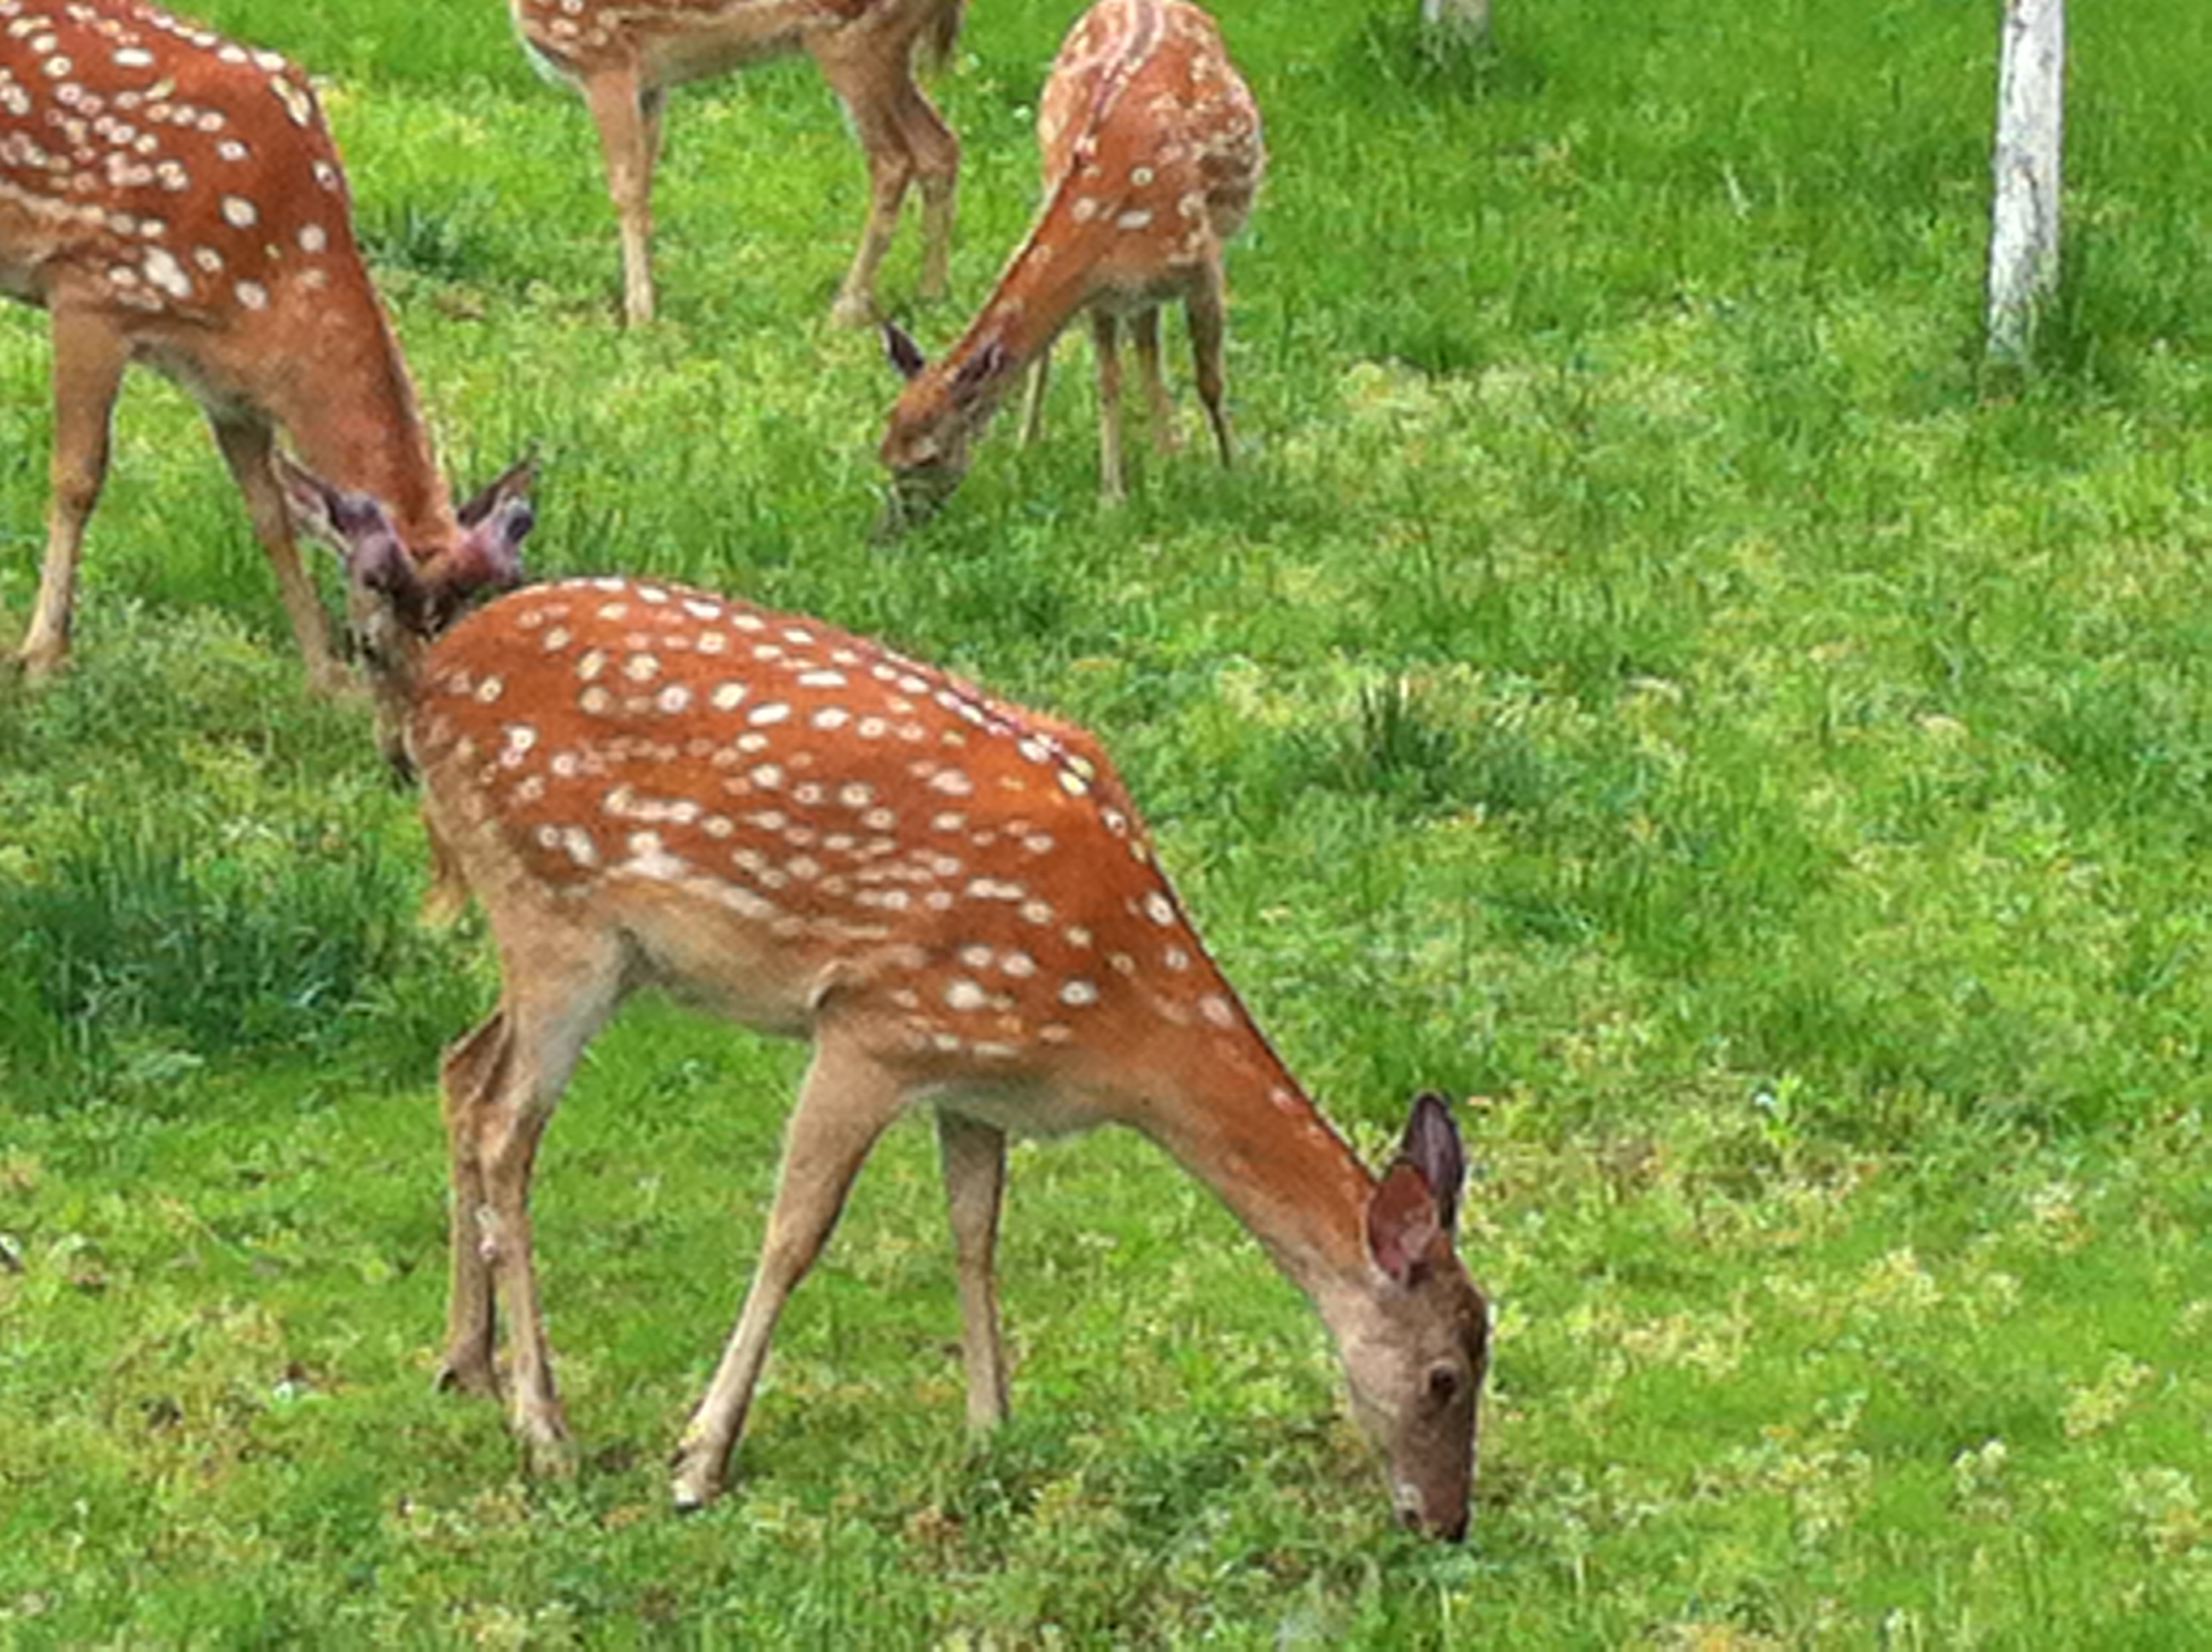 偶见鹿儿在自由的散步吃草,拍下.